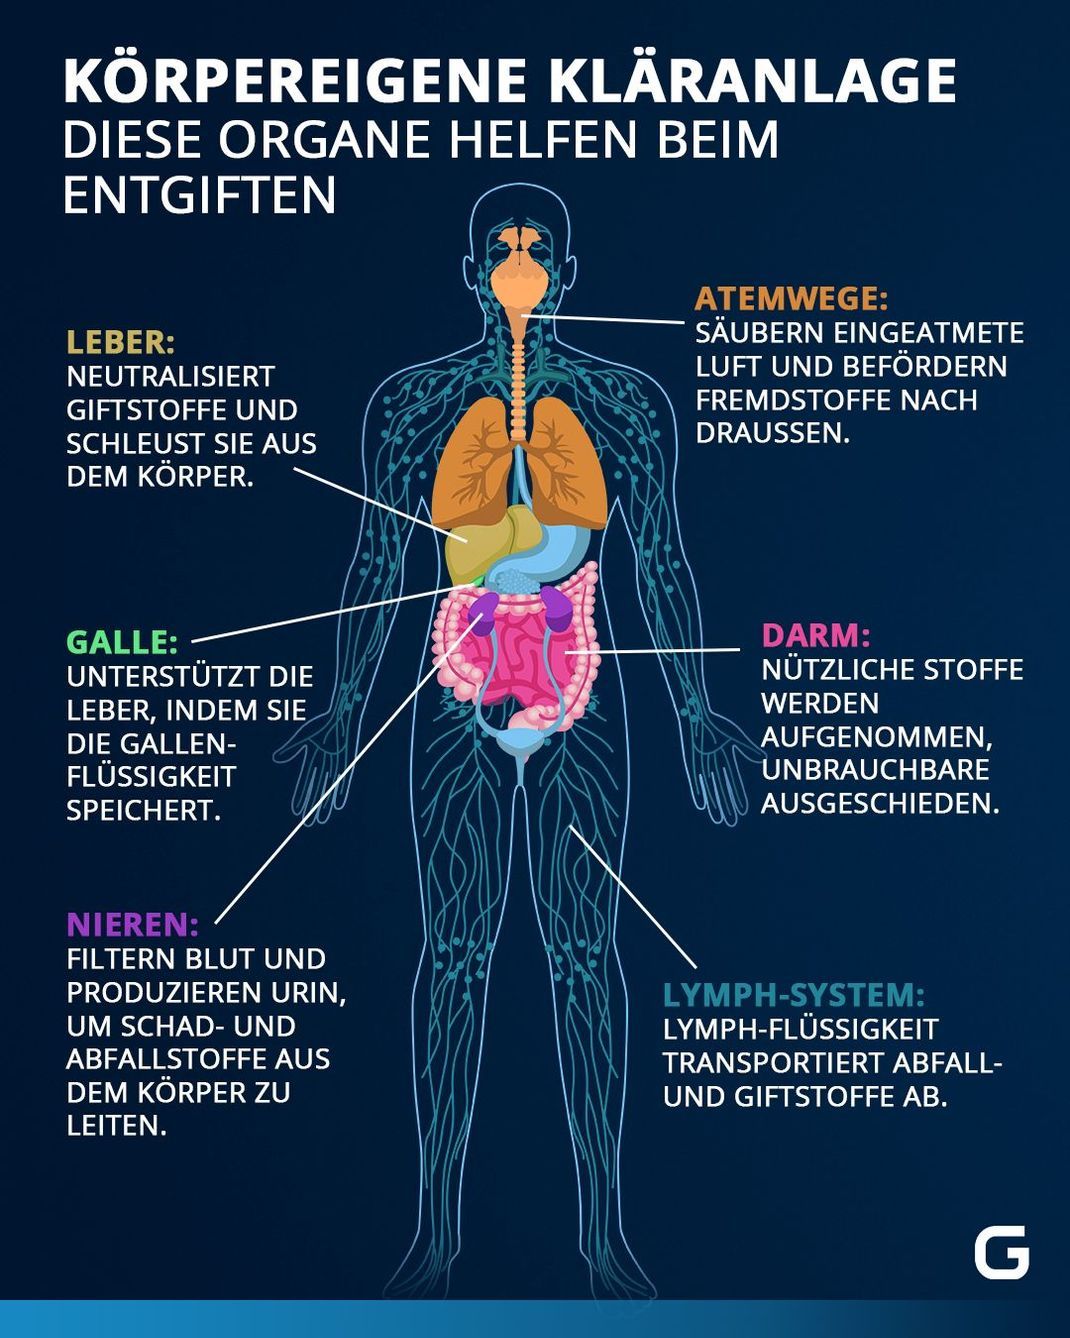 Die Grafik zeigt, welche Organe am Entgiftungsprozess beteiligt sind.
